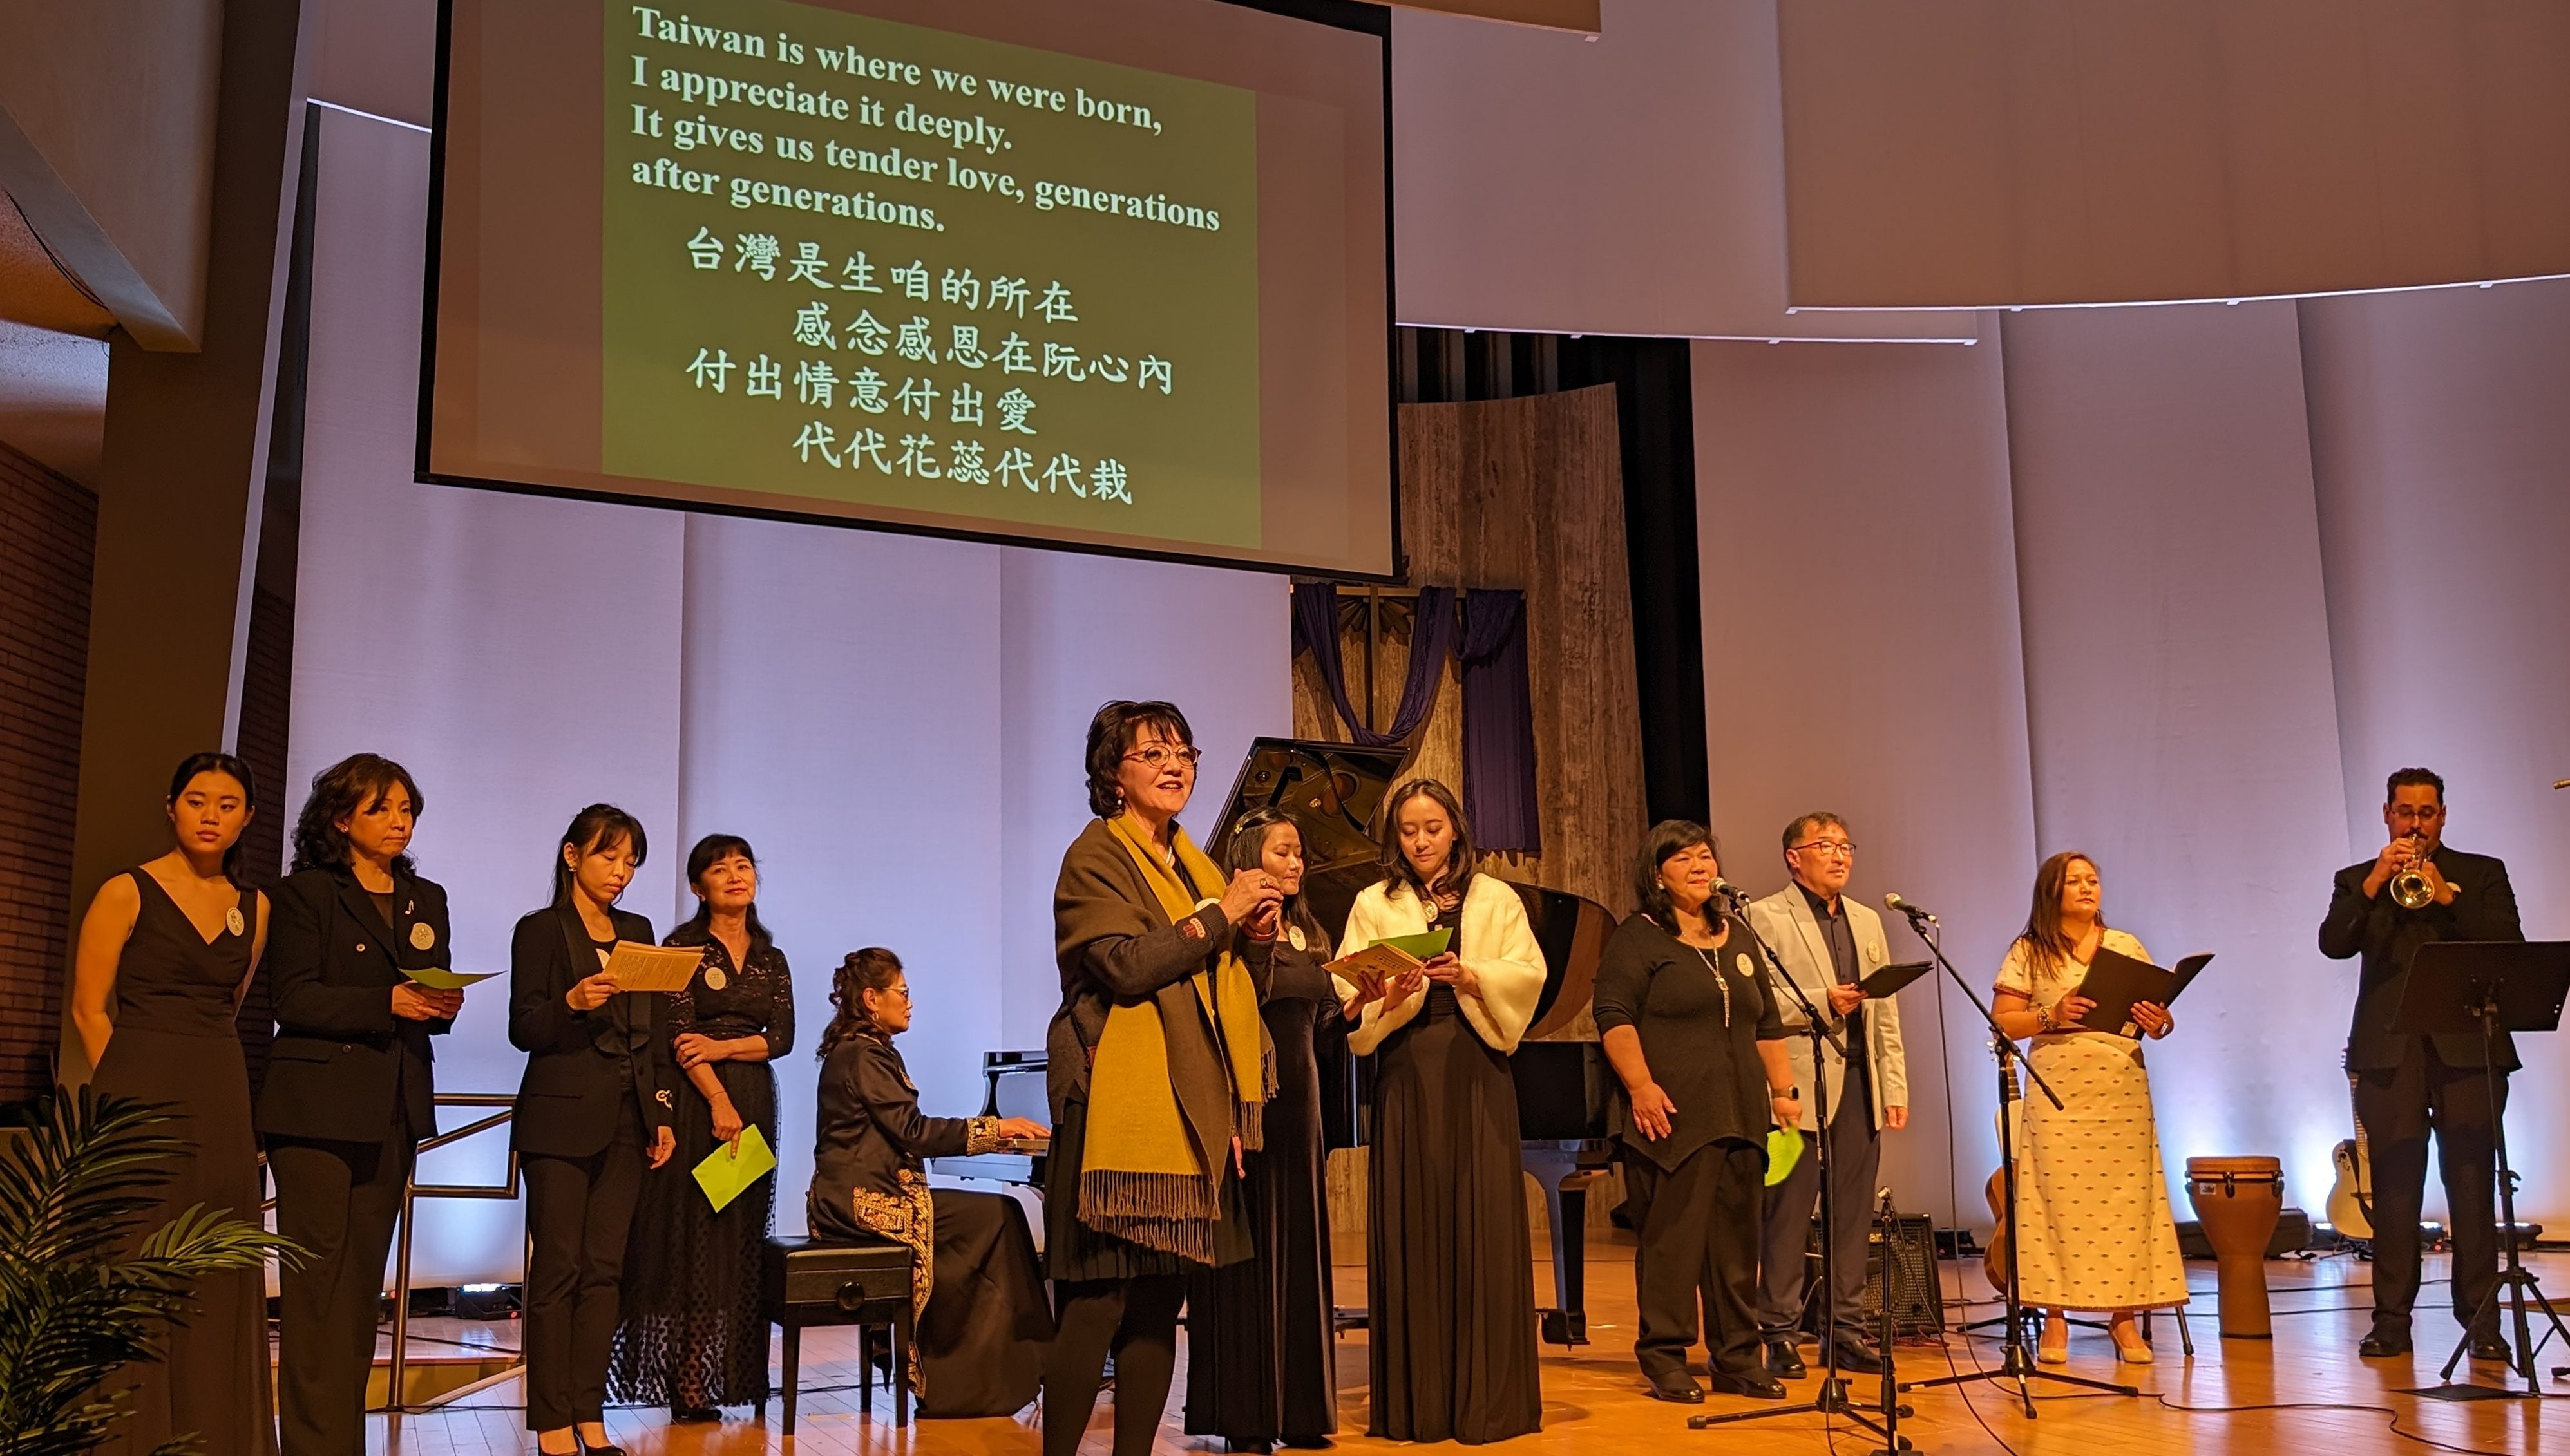 228台湾介心灵日音乐会 众人合唱《台湾》